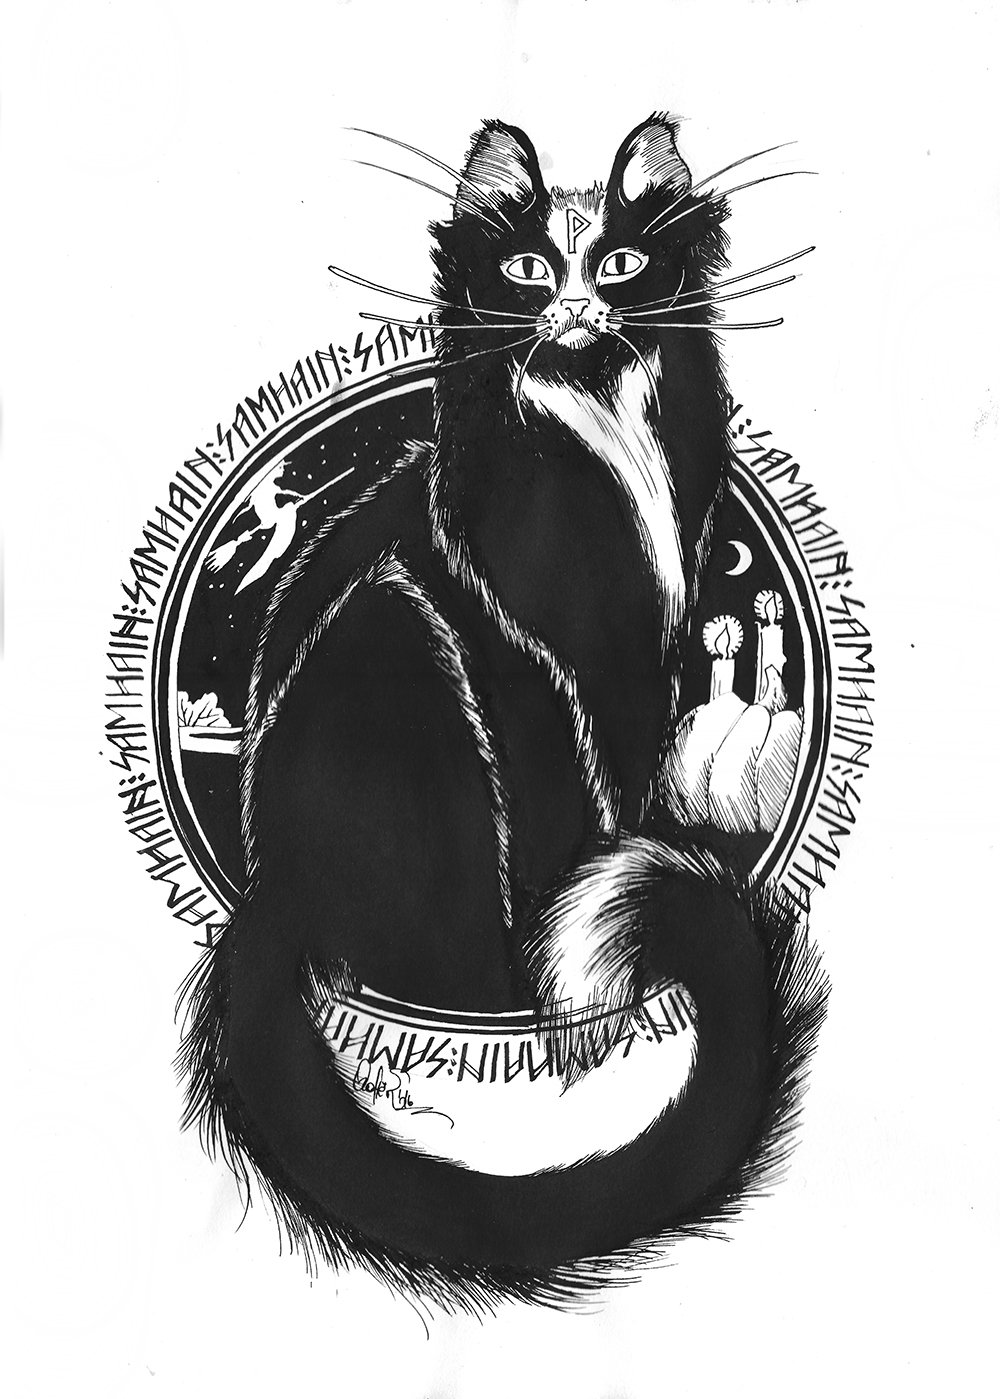 Йольский кот рисунок